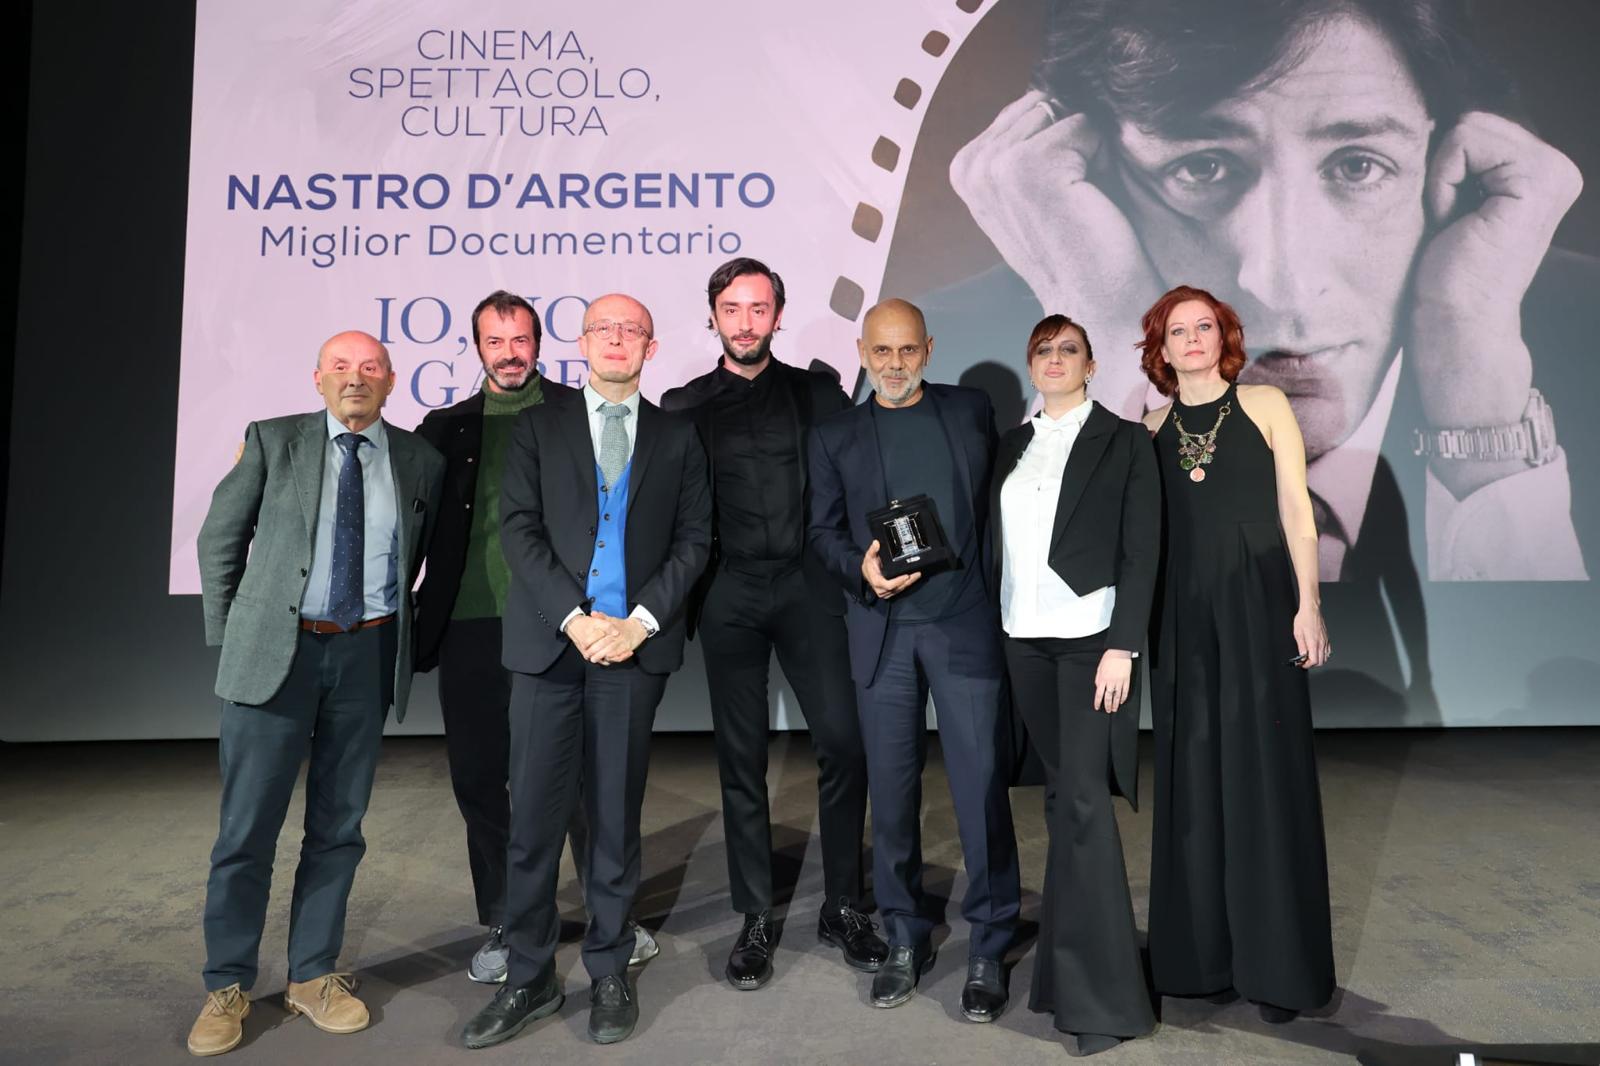 Io, noi e Gaber, la prima opera cinematografica dedicata a Giorgio Gaber di Riccardo Milani trionfa ai Nastri D’argento